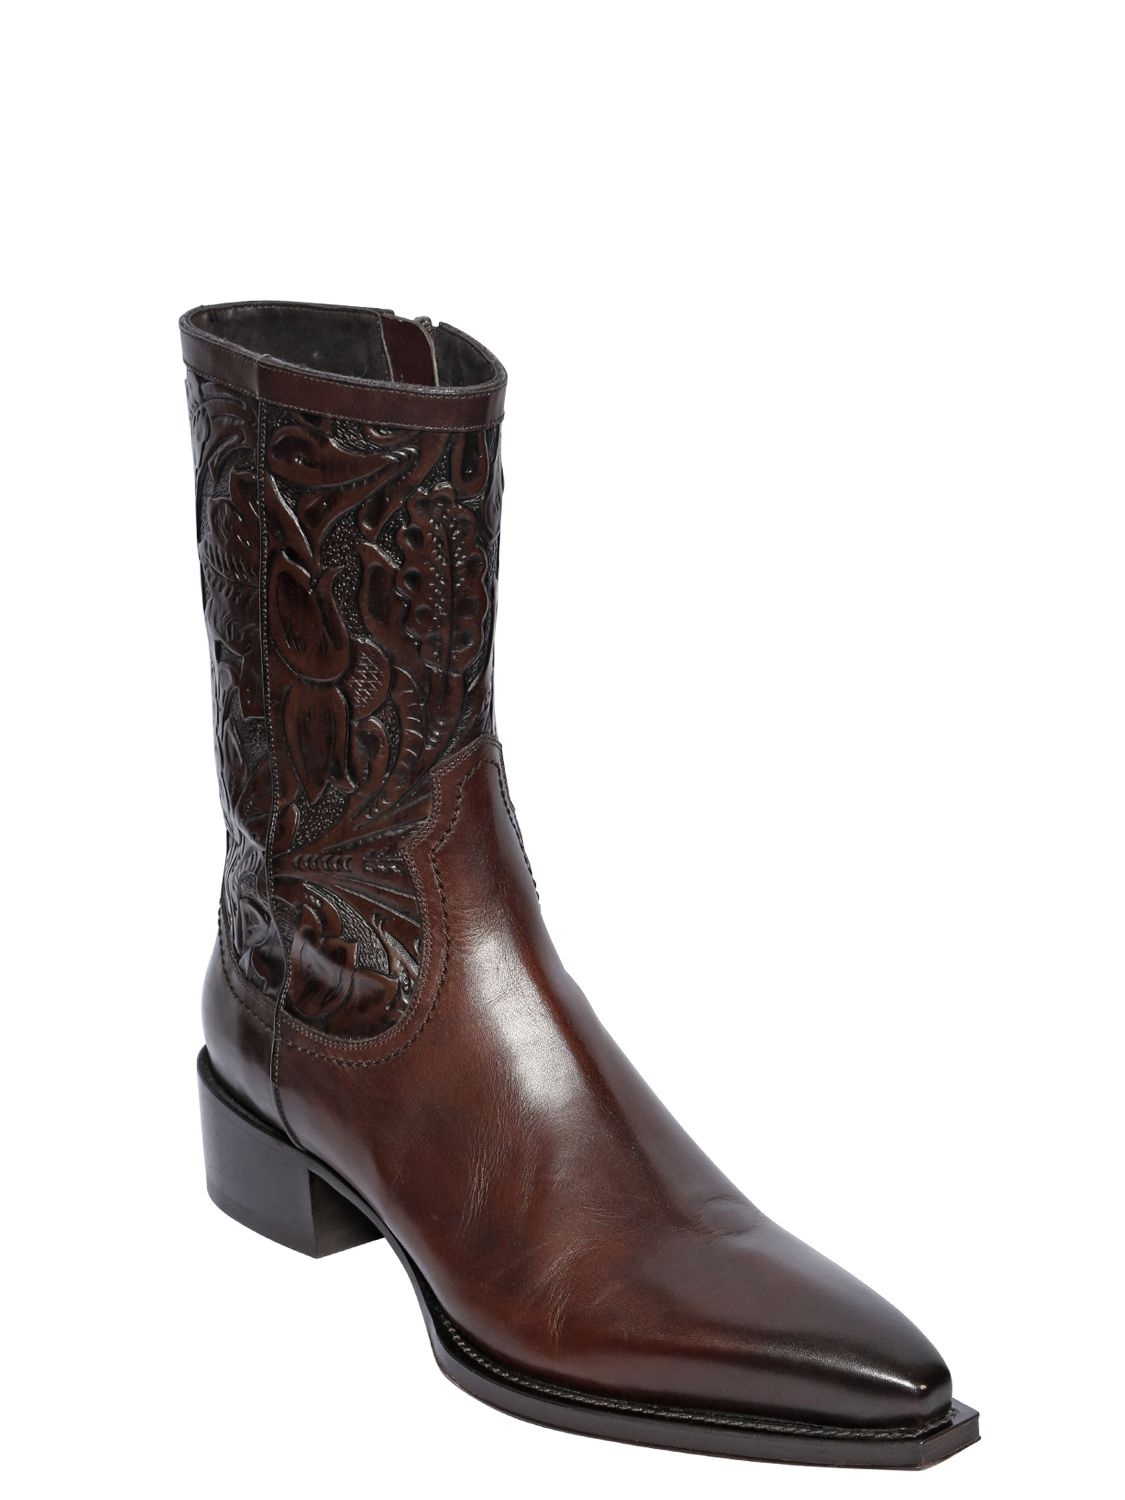 dsquared2 cowboy boots